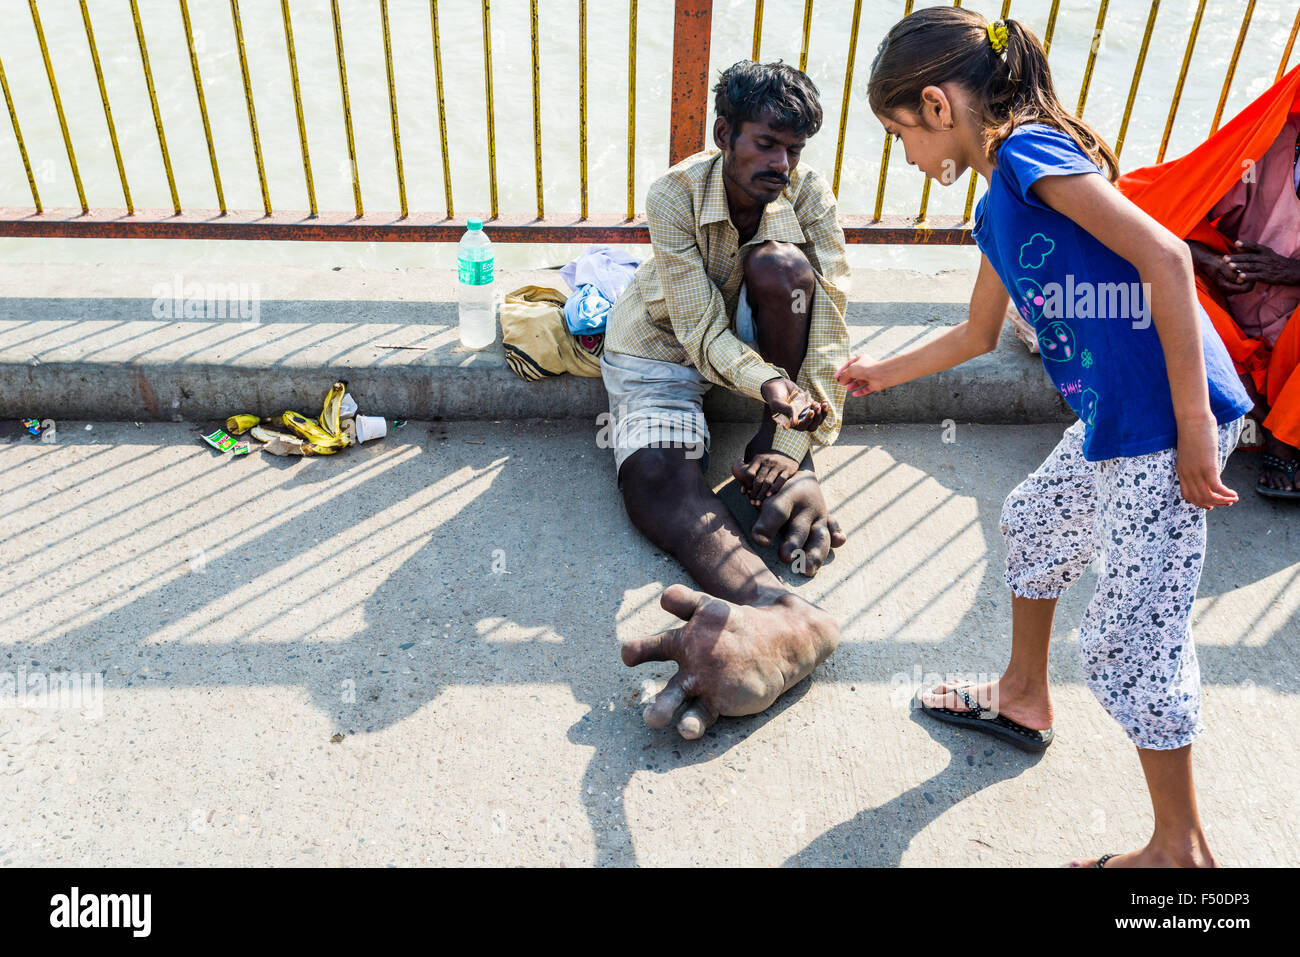 Un mendiant avec l'éléphantiasis à ses pieds reçoit une partie de l'argent d'une jeune fille de harki pauri ghat au fleuve saint Ganges Banque D'Images